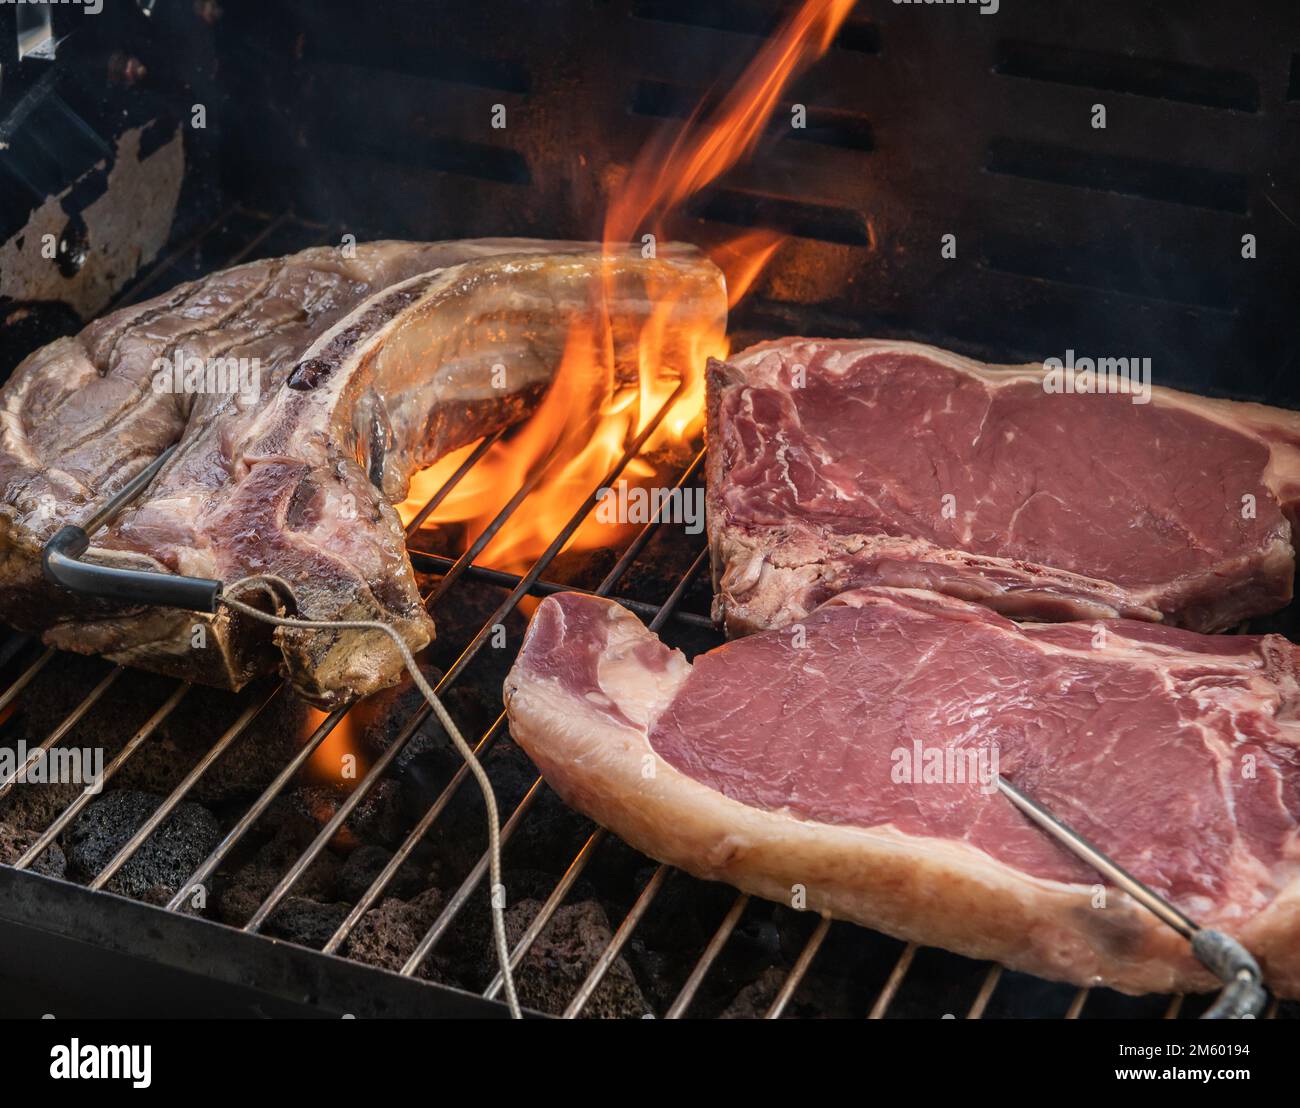 Gegrilltes T-Bone Steak (Rindersteak) auf einem Grill mit Fleischthermometer. Selektiver Fokus - Trentino Alto Adige, Norditalien - Europa Stockfoto